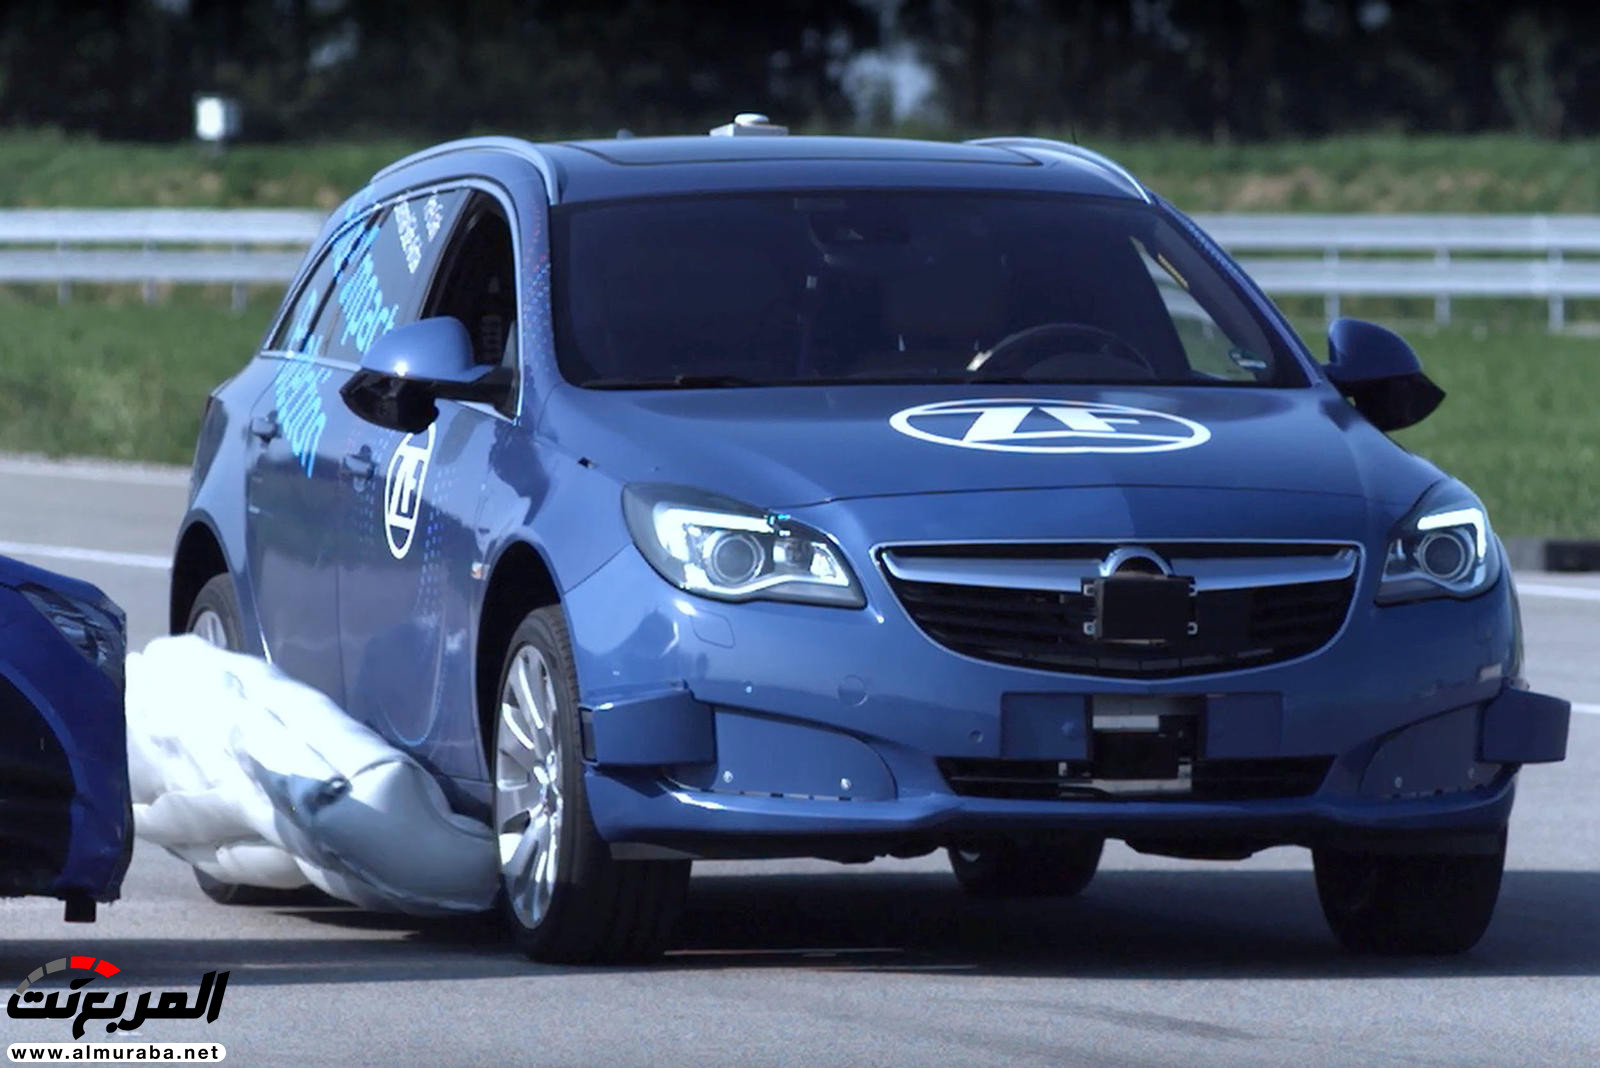 "بالفيديو والصور" شاهد كيف تعمل وسادة الهواء الخارجية القادمة للسيارات 5